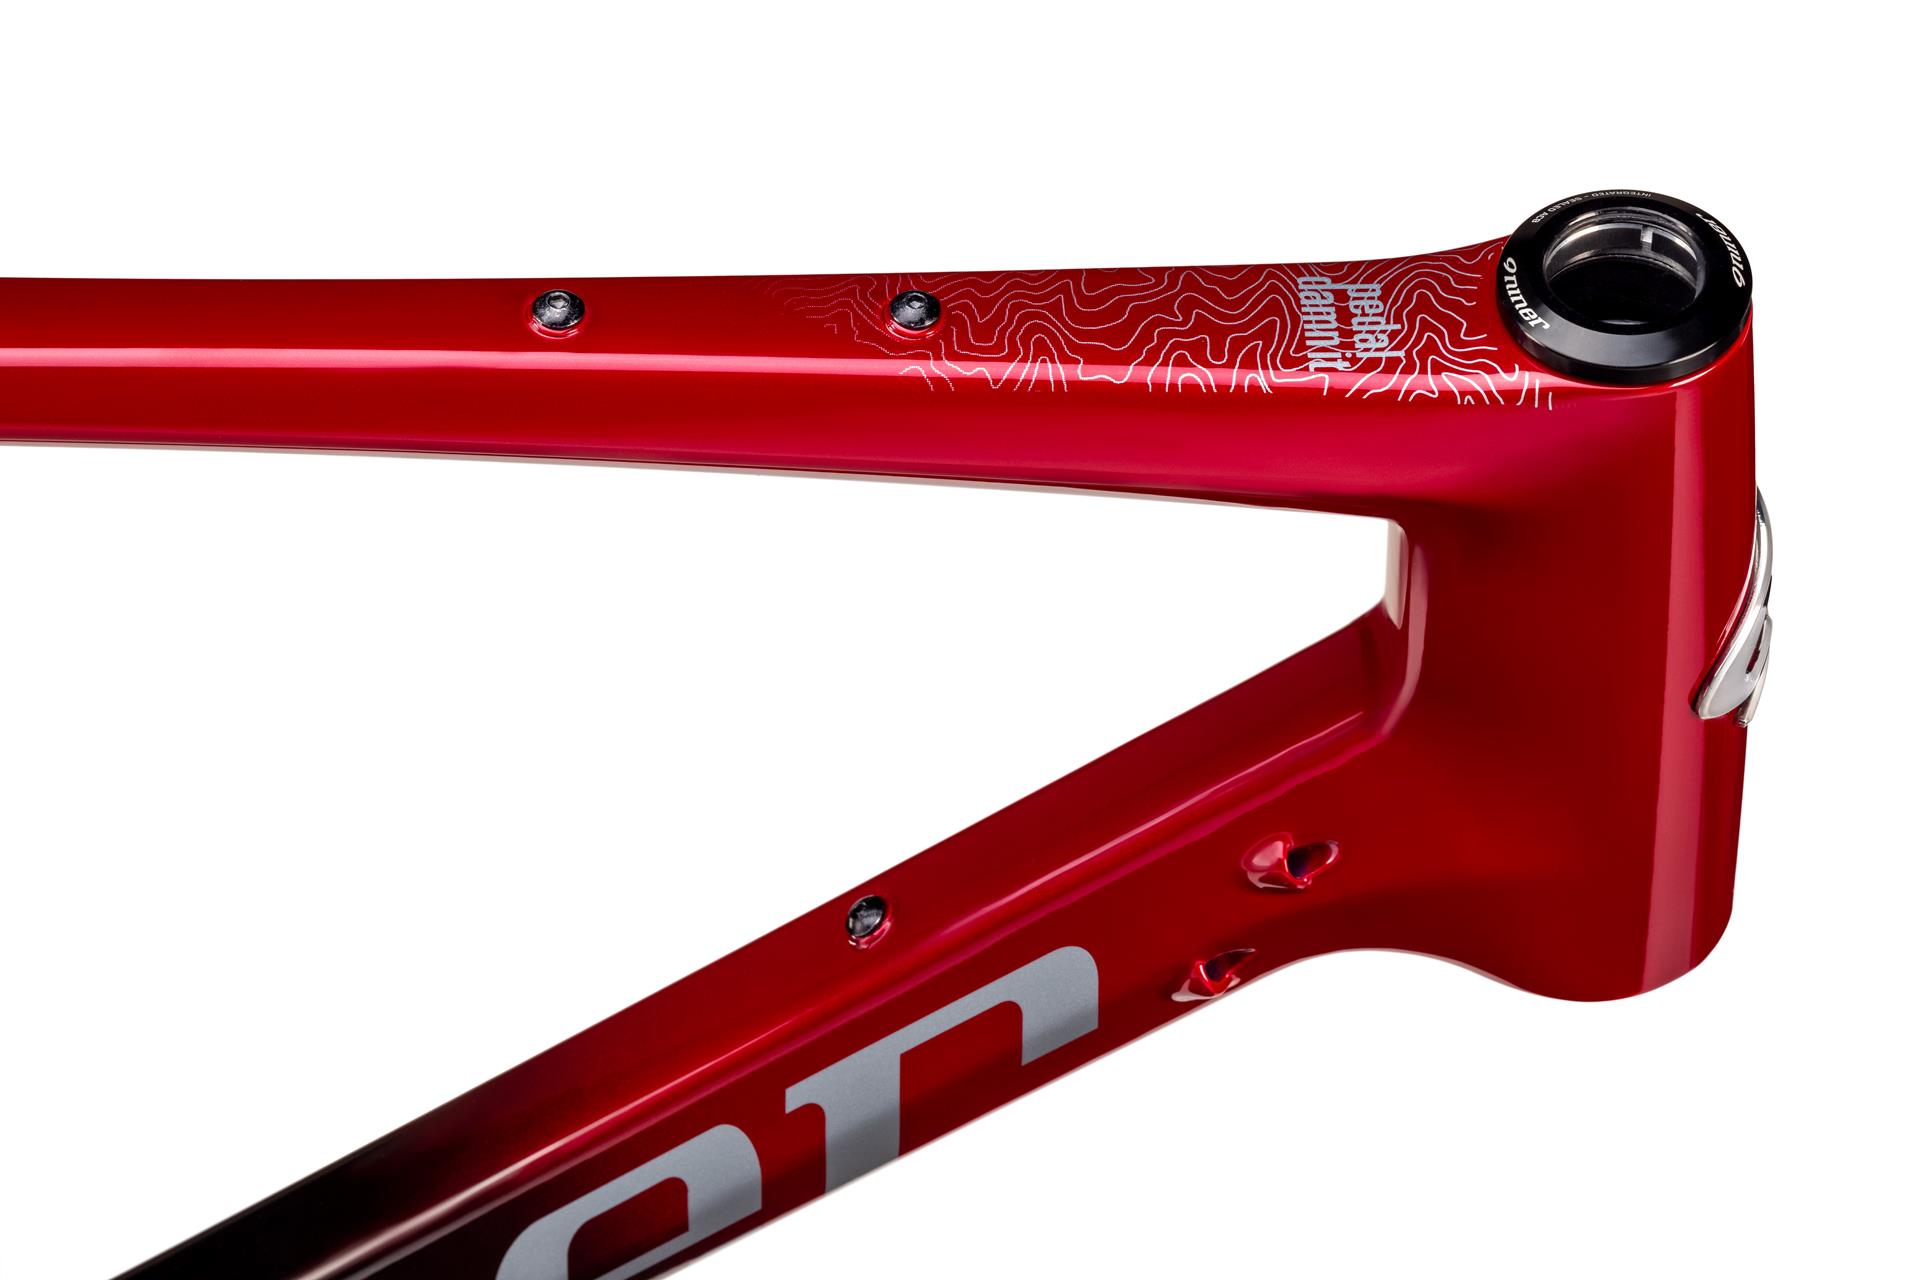 Niner RLT RDO 2-star велосипед, кроваво-красный, 53